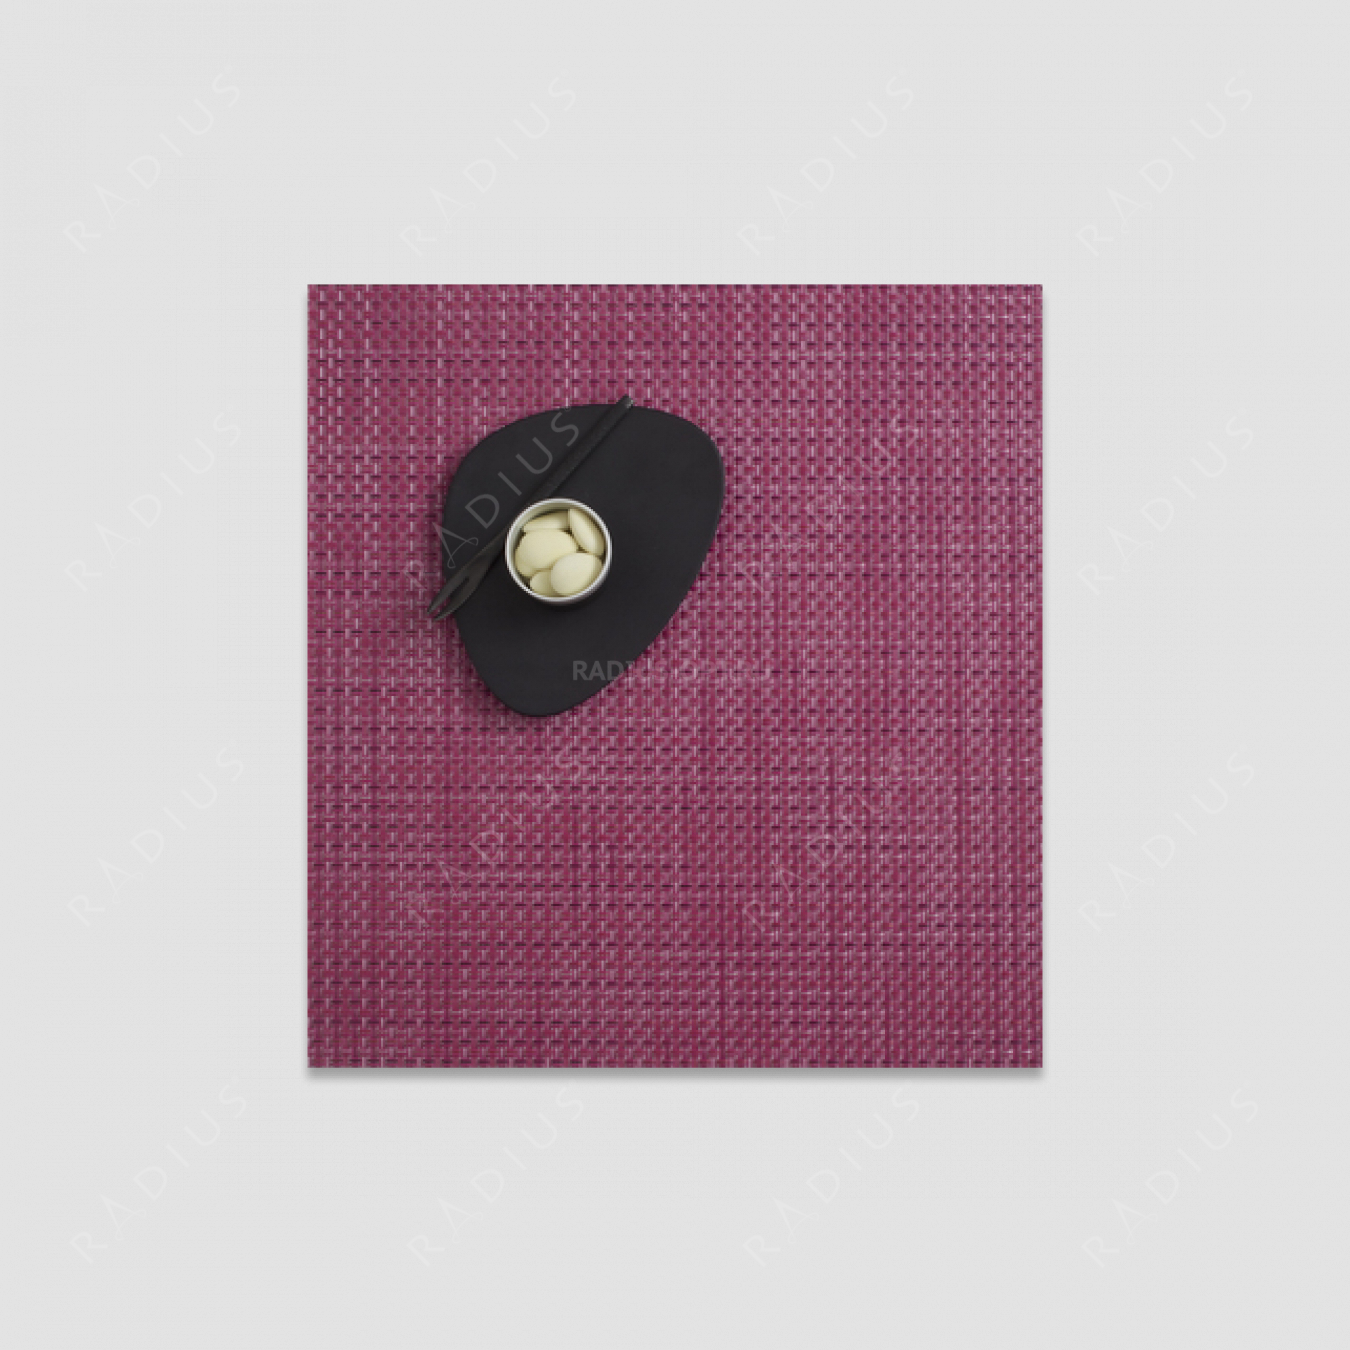 Салфетка подстановочная, жаккардовое плетение, винил, (33x36), серия Basketweave, CHILEWICH, США